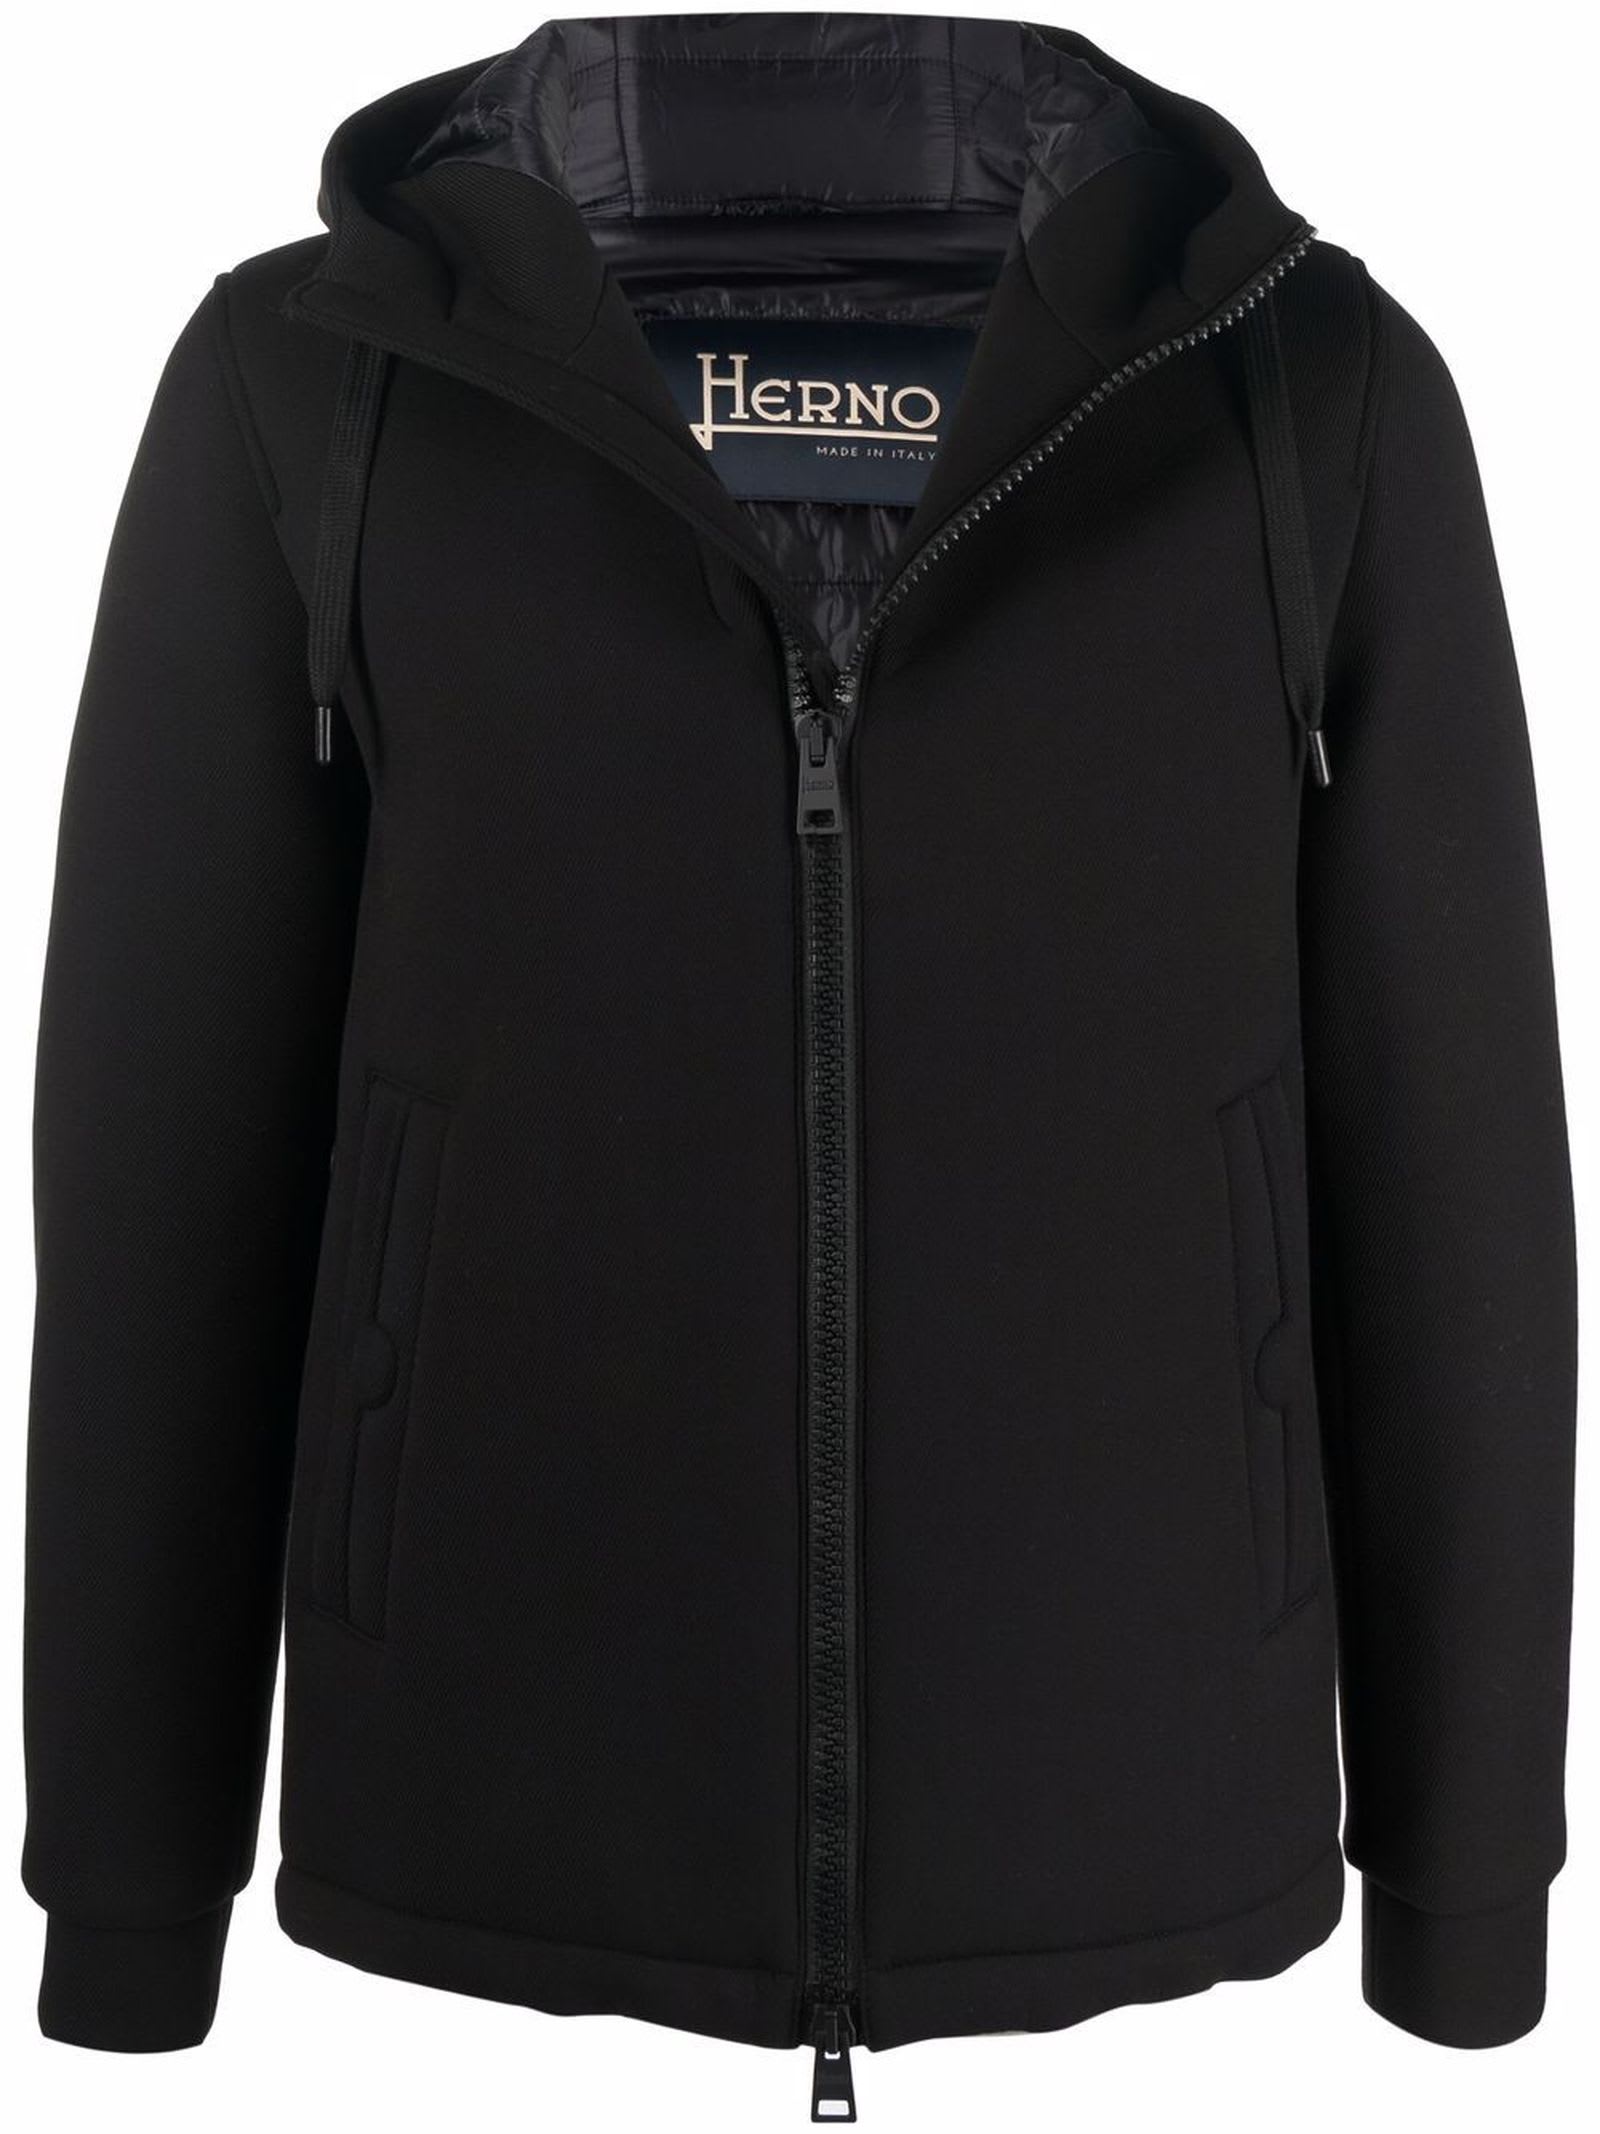 Herno Black Fabric Bomber Jacket